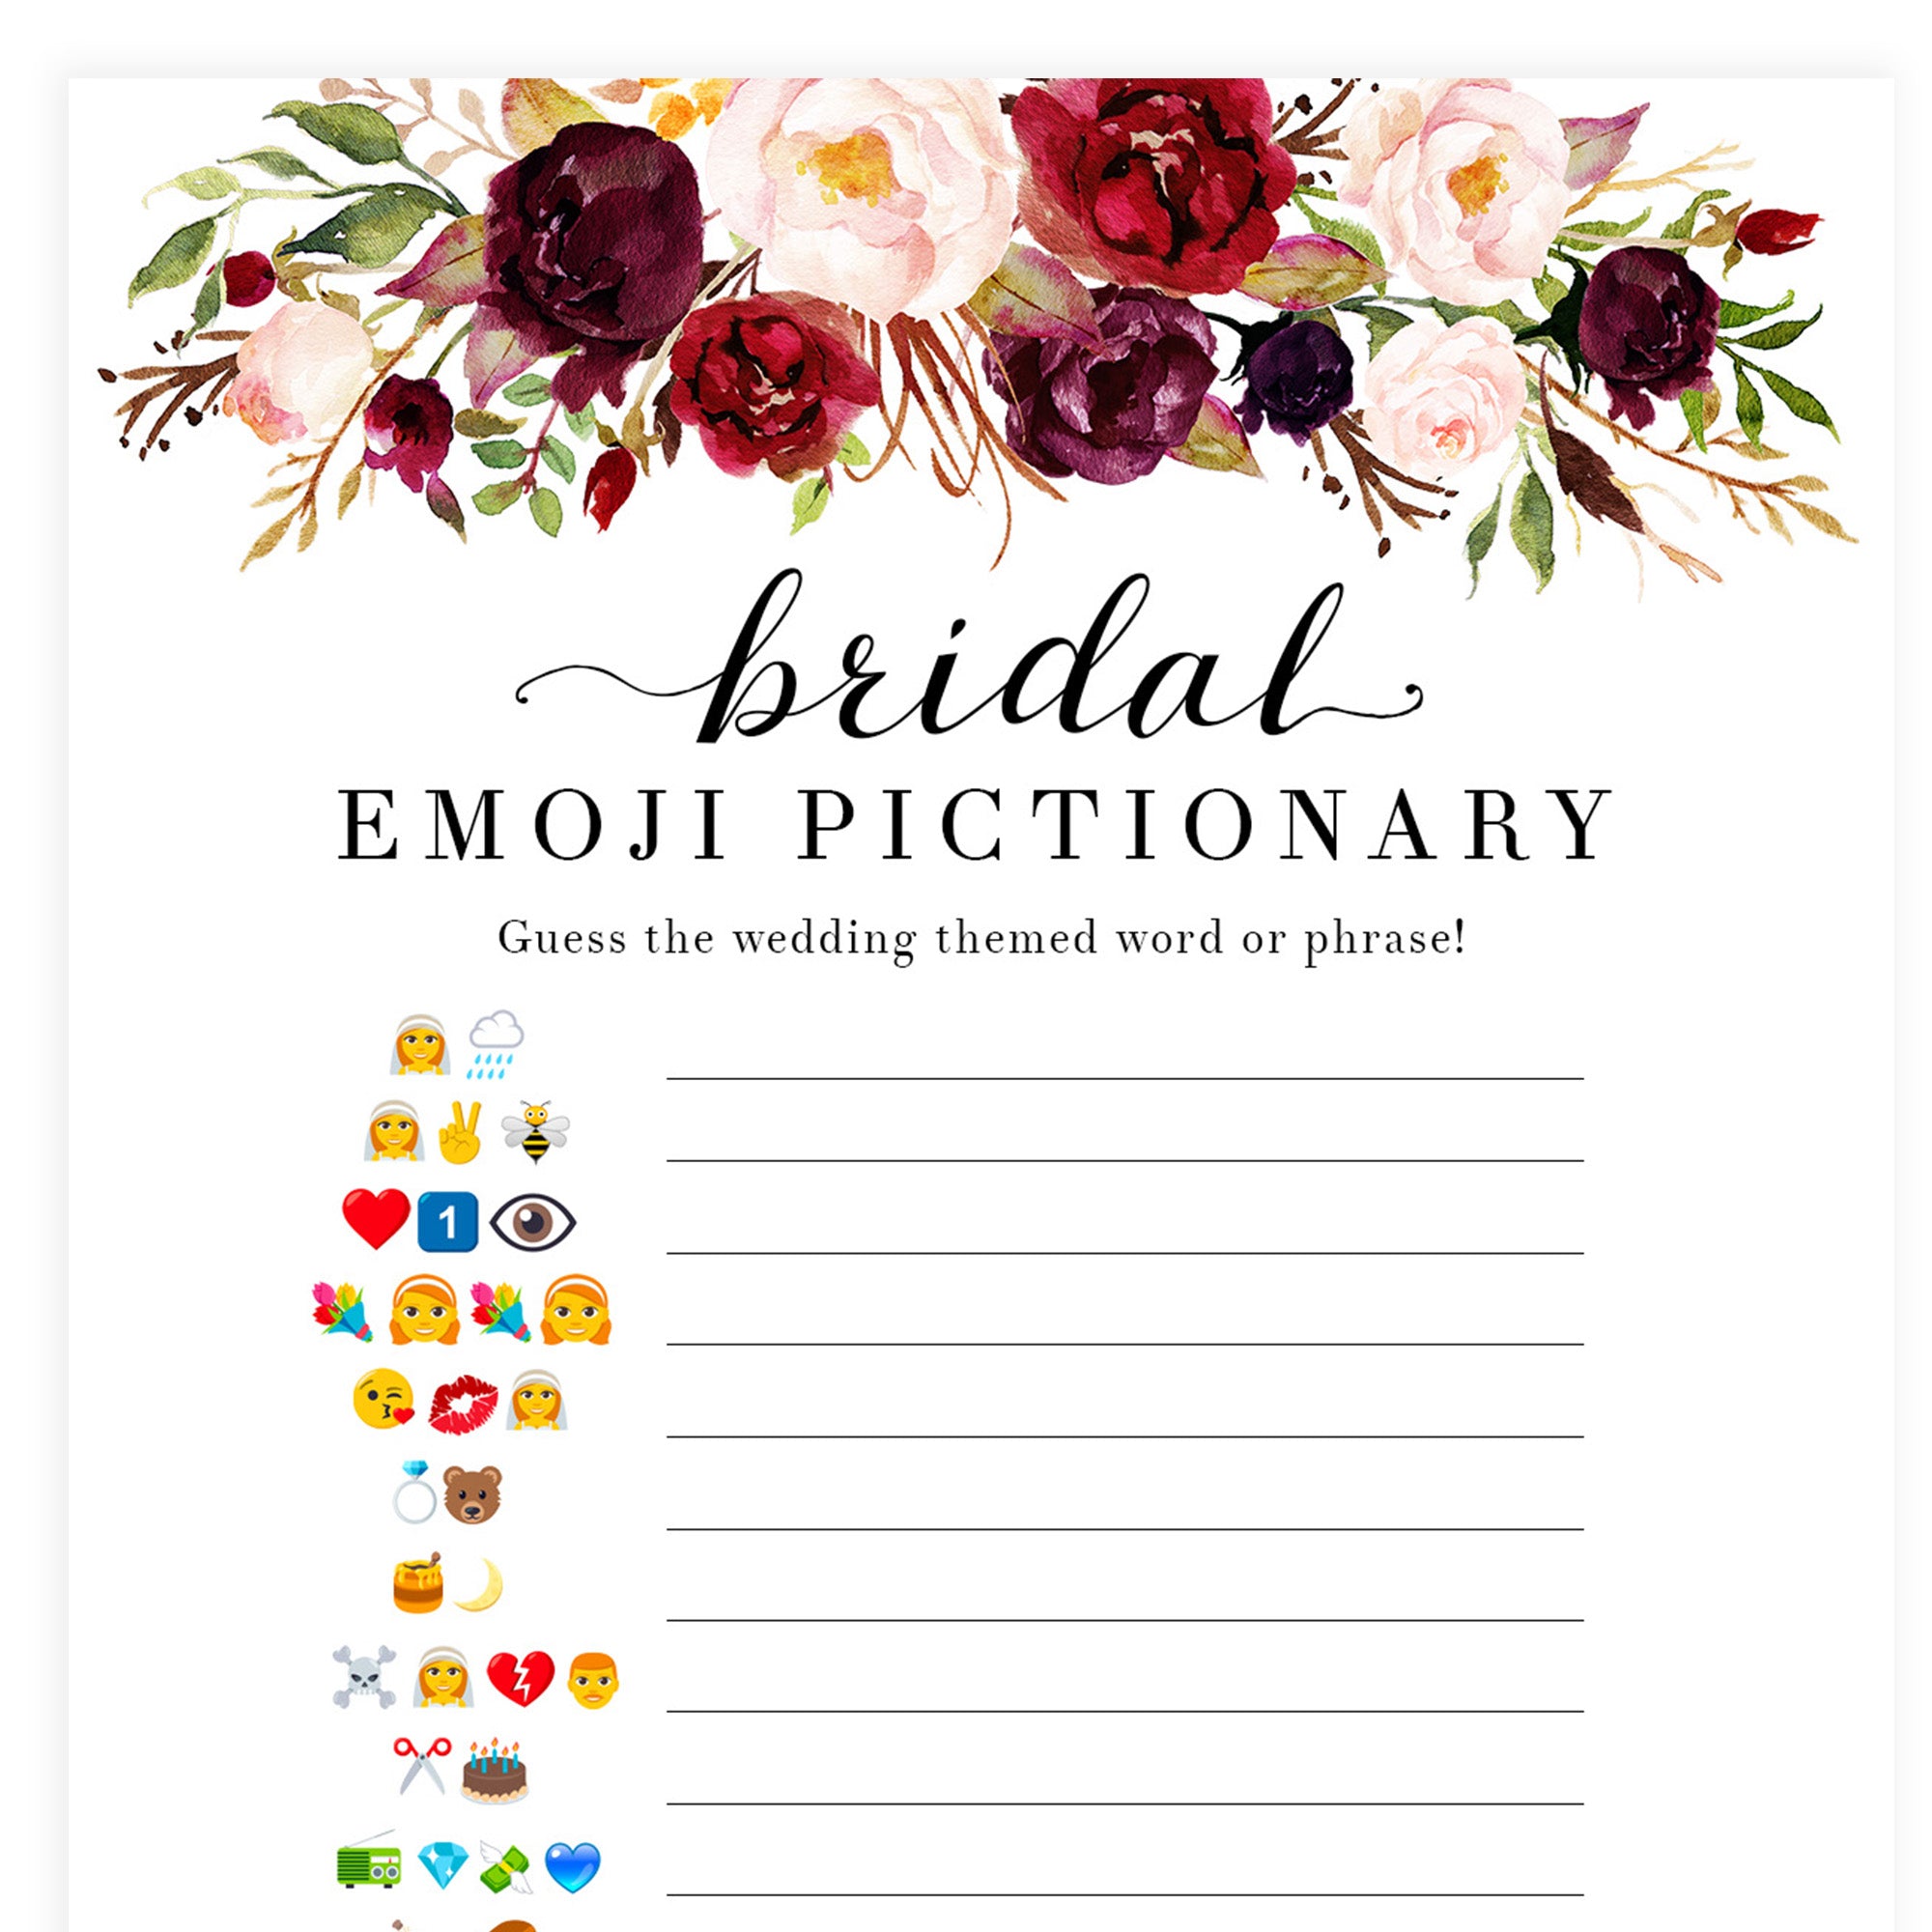 Bridal Emoji Pictionary - White Marsala